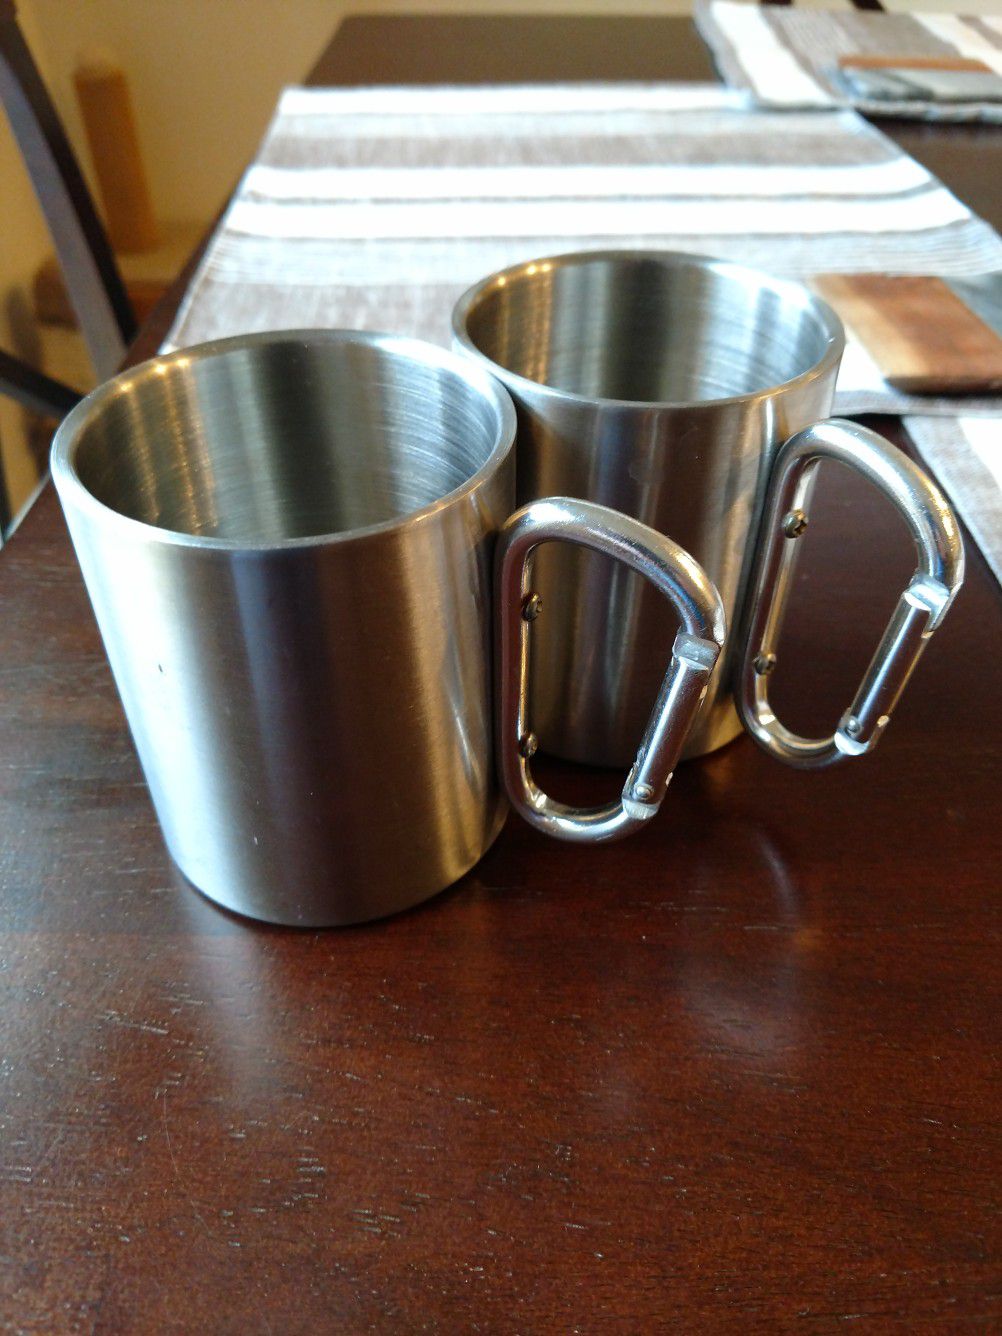 Carabineer camping mugs